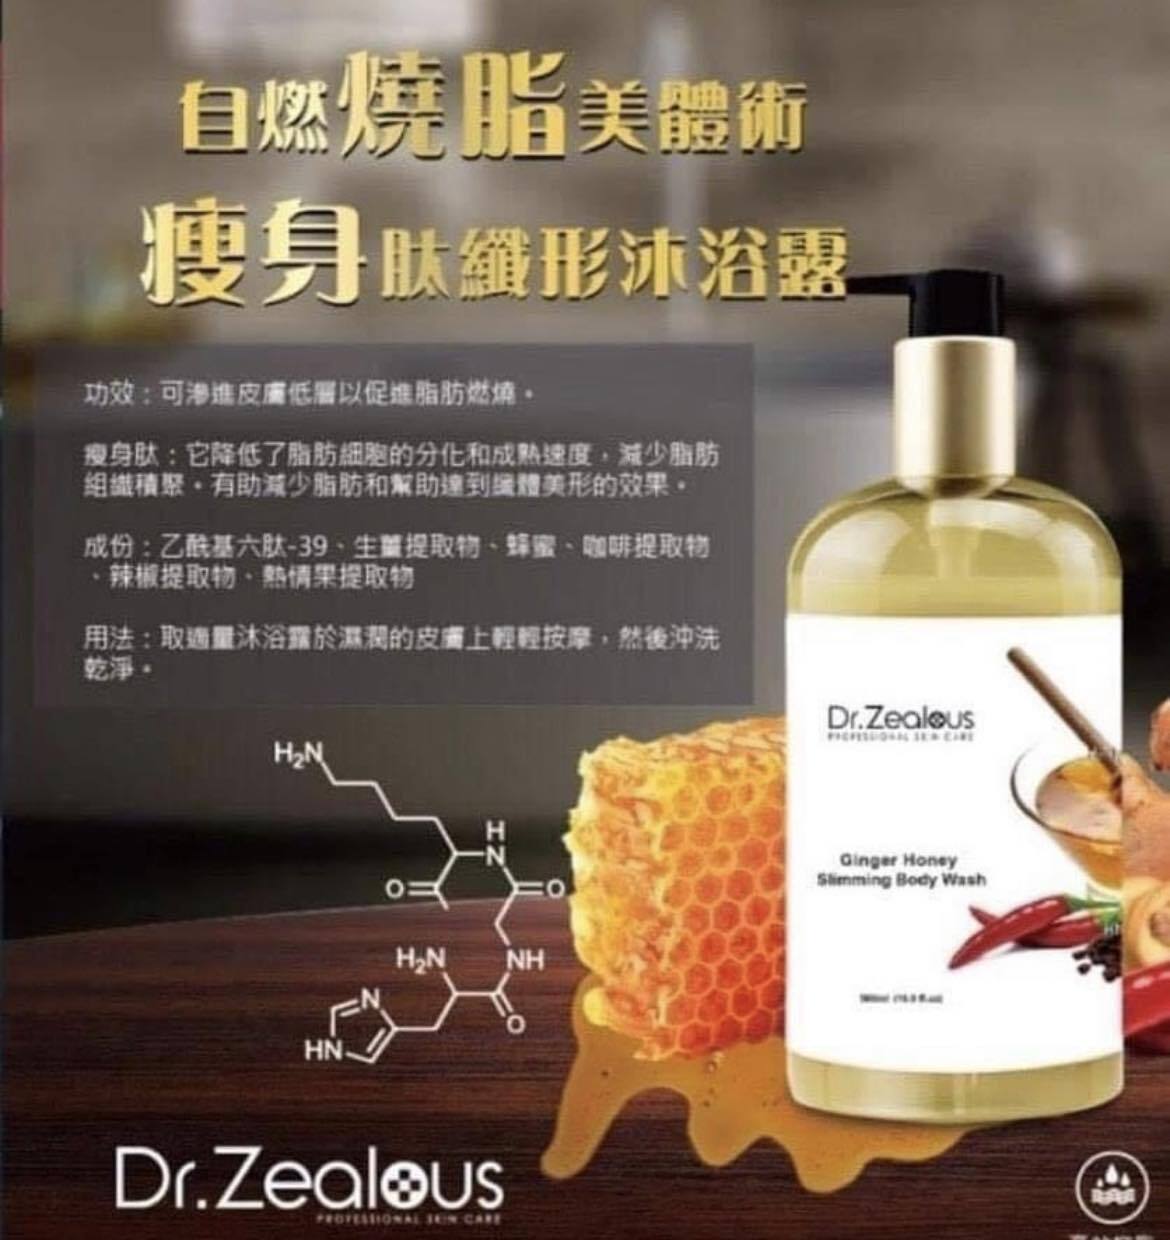 Dr.Zealous Ginger Honey Slimming Body Wash 500ml